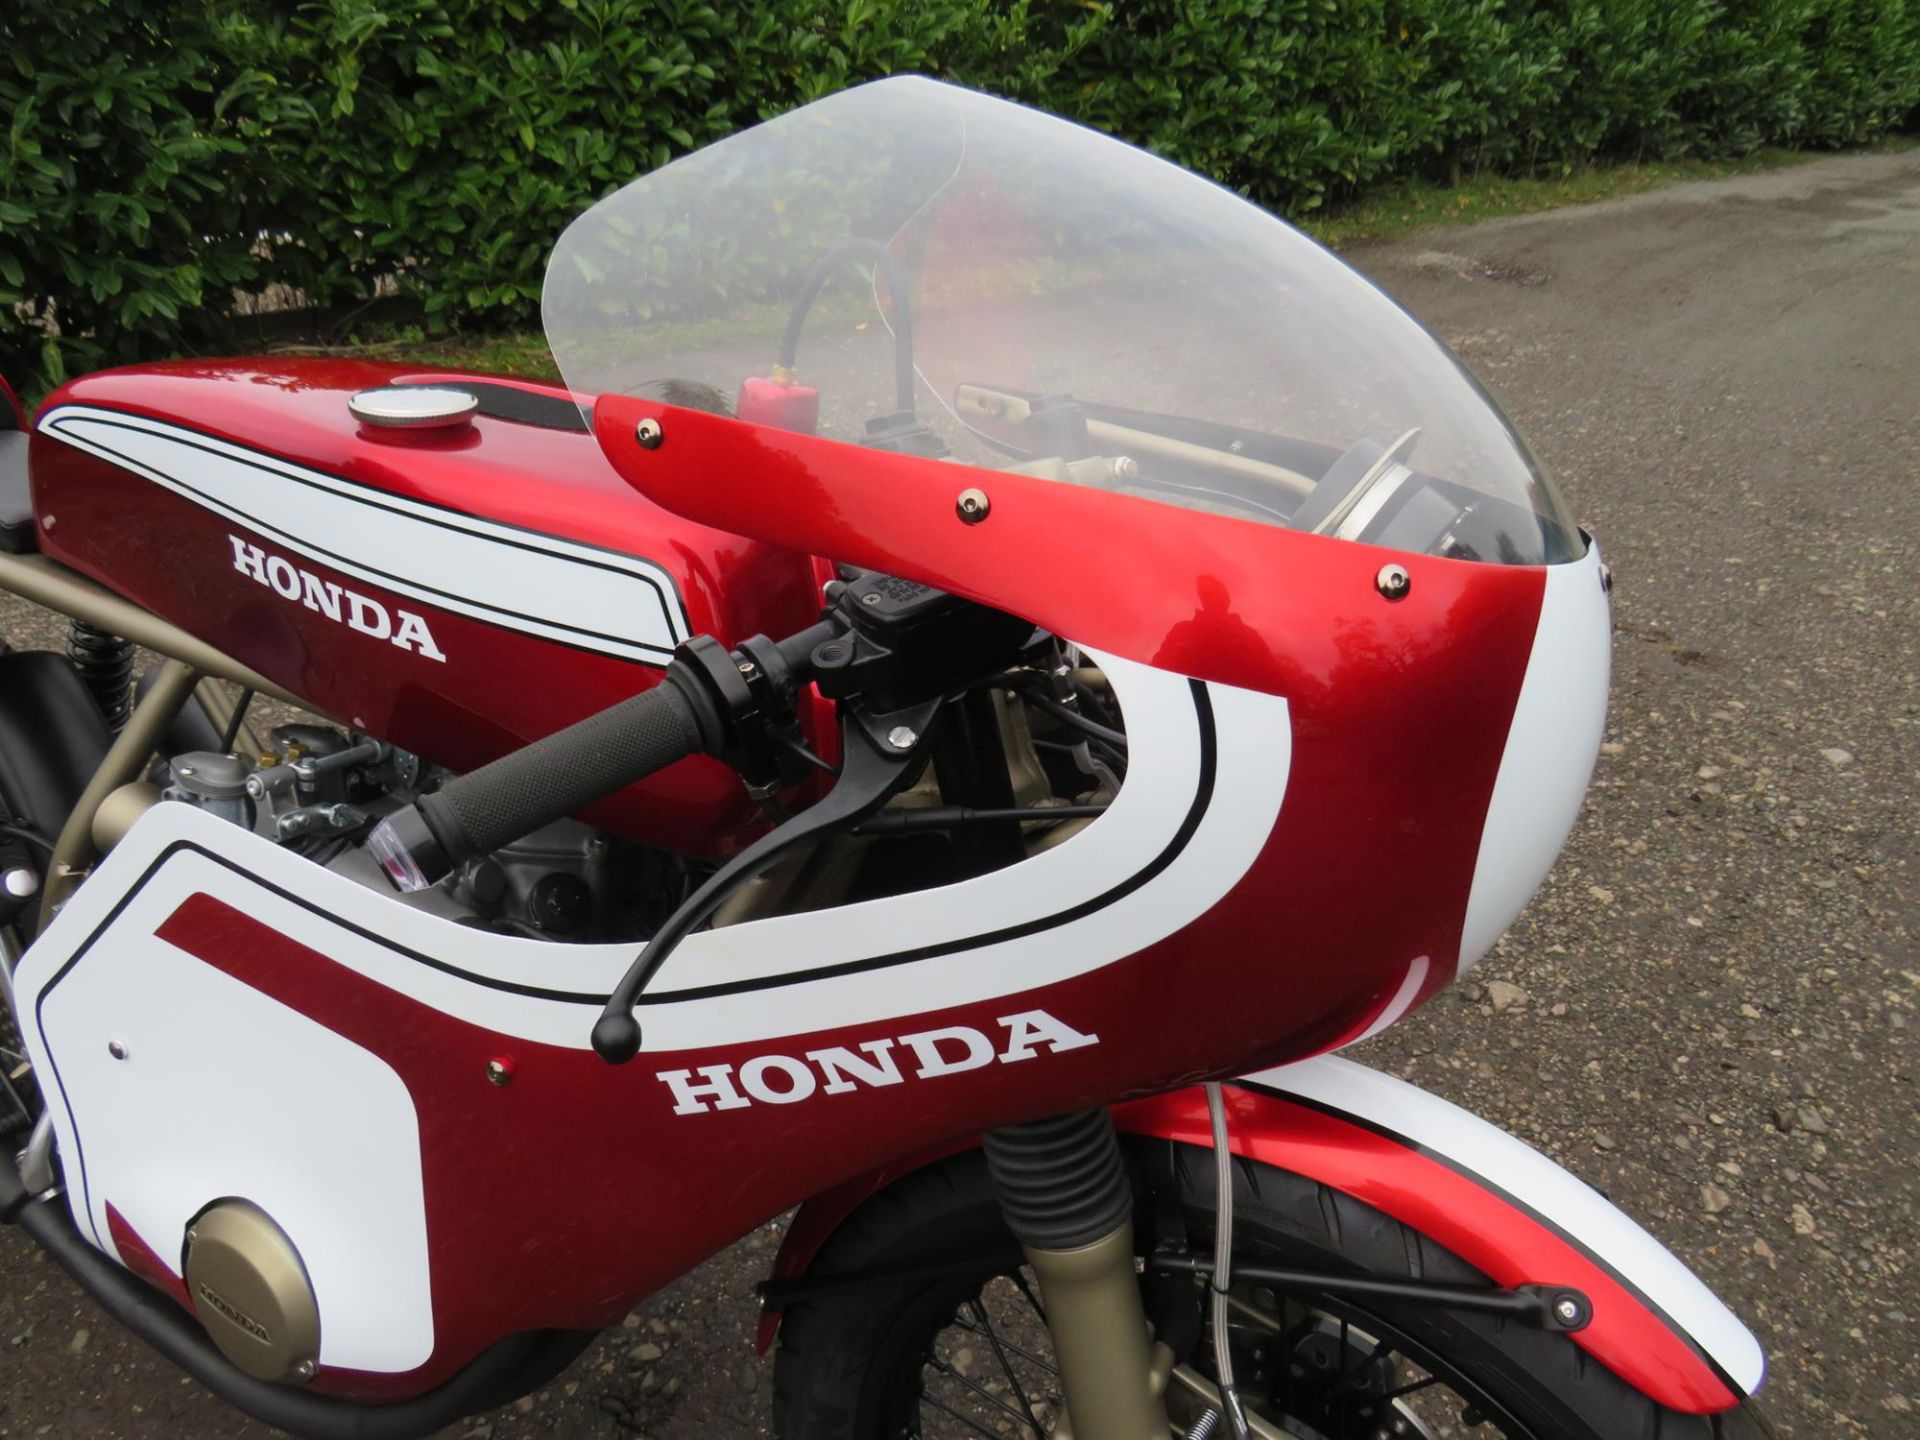 1979 Honda CB550 'CR750' Replica 544cc - Image 10 of 10